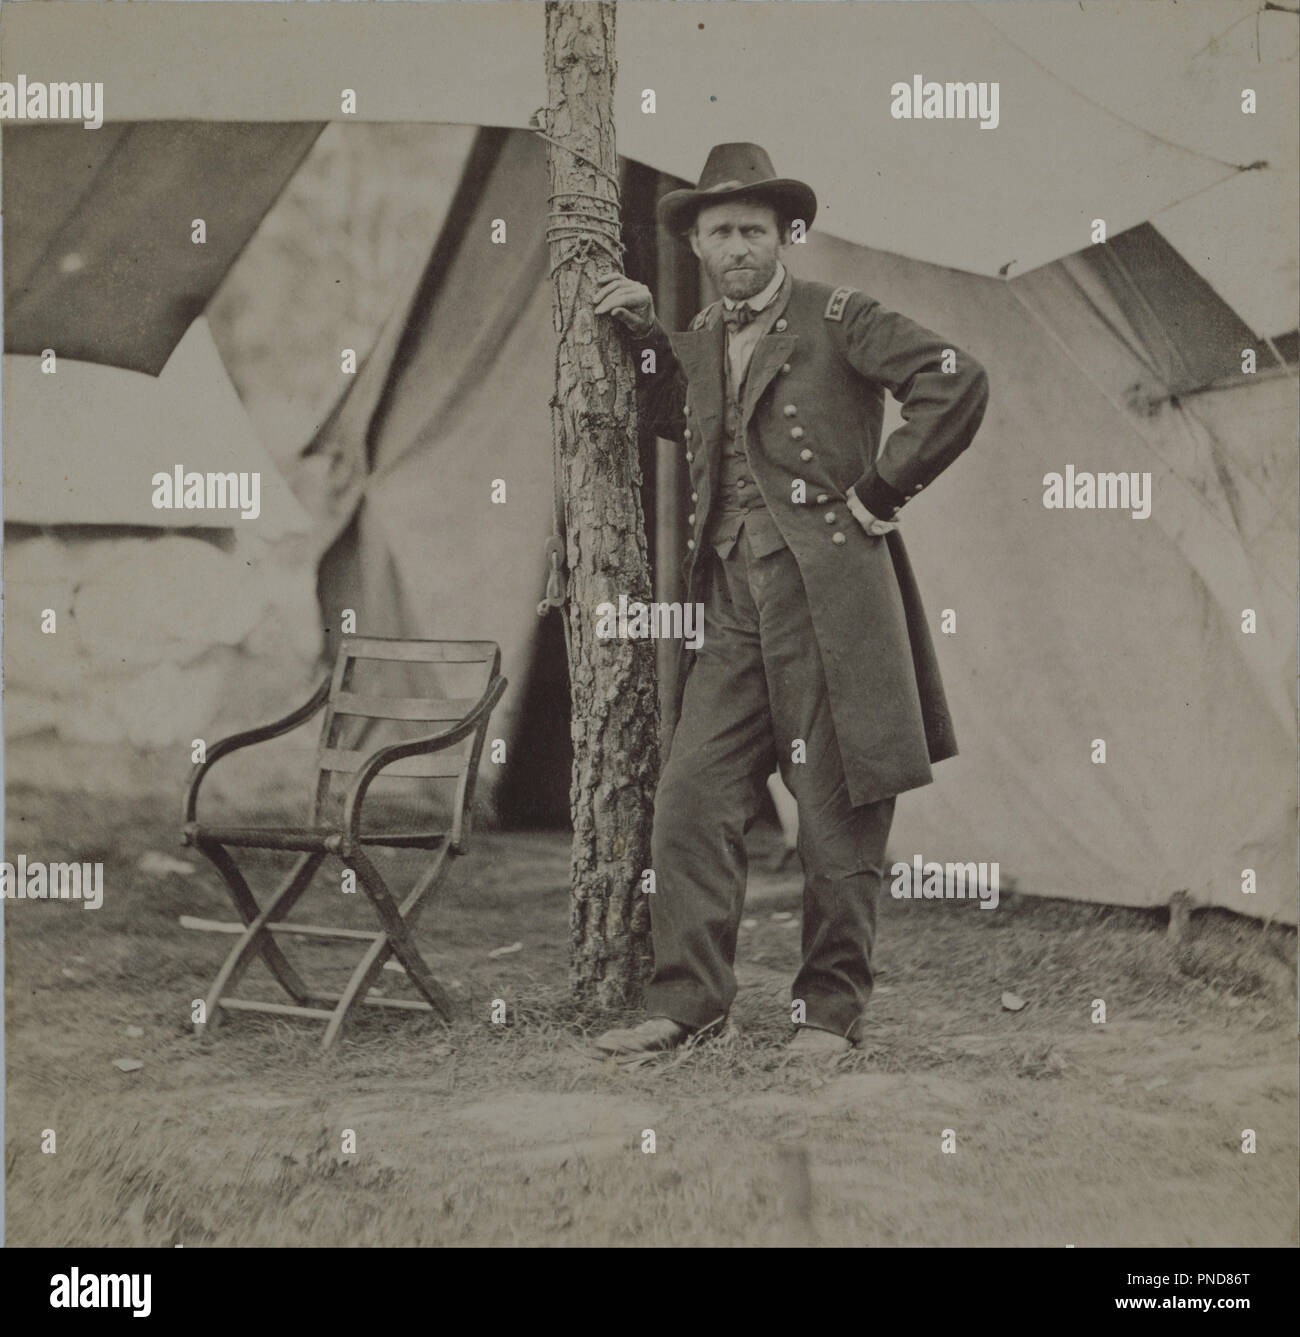 Ulisse S. Grant. Data/Periodo: 1864. Fotografia. Albume stampa. Altezza: 116 mm (4,56 in); larghezza: 121 mm (4,76 in). Autore: Mathew B. Brady. Foto Stock